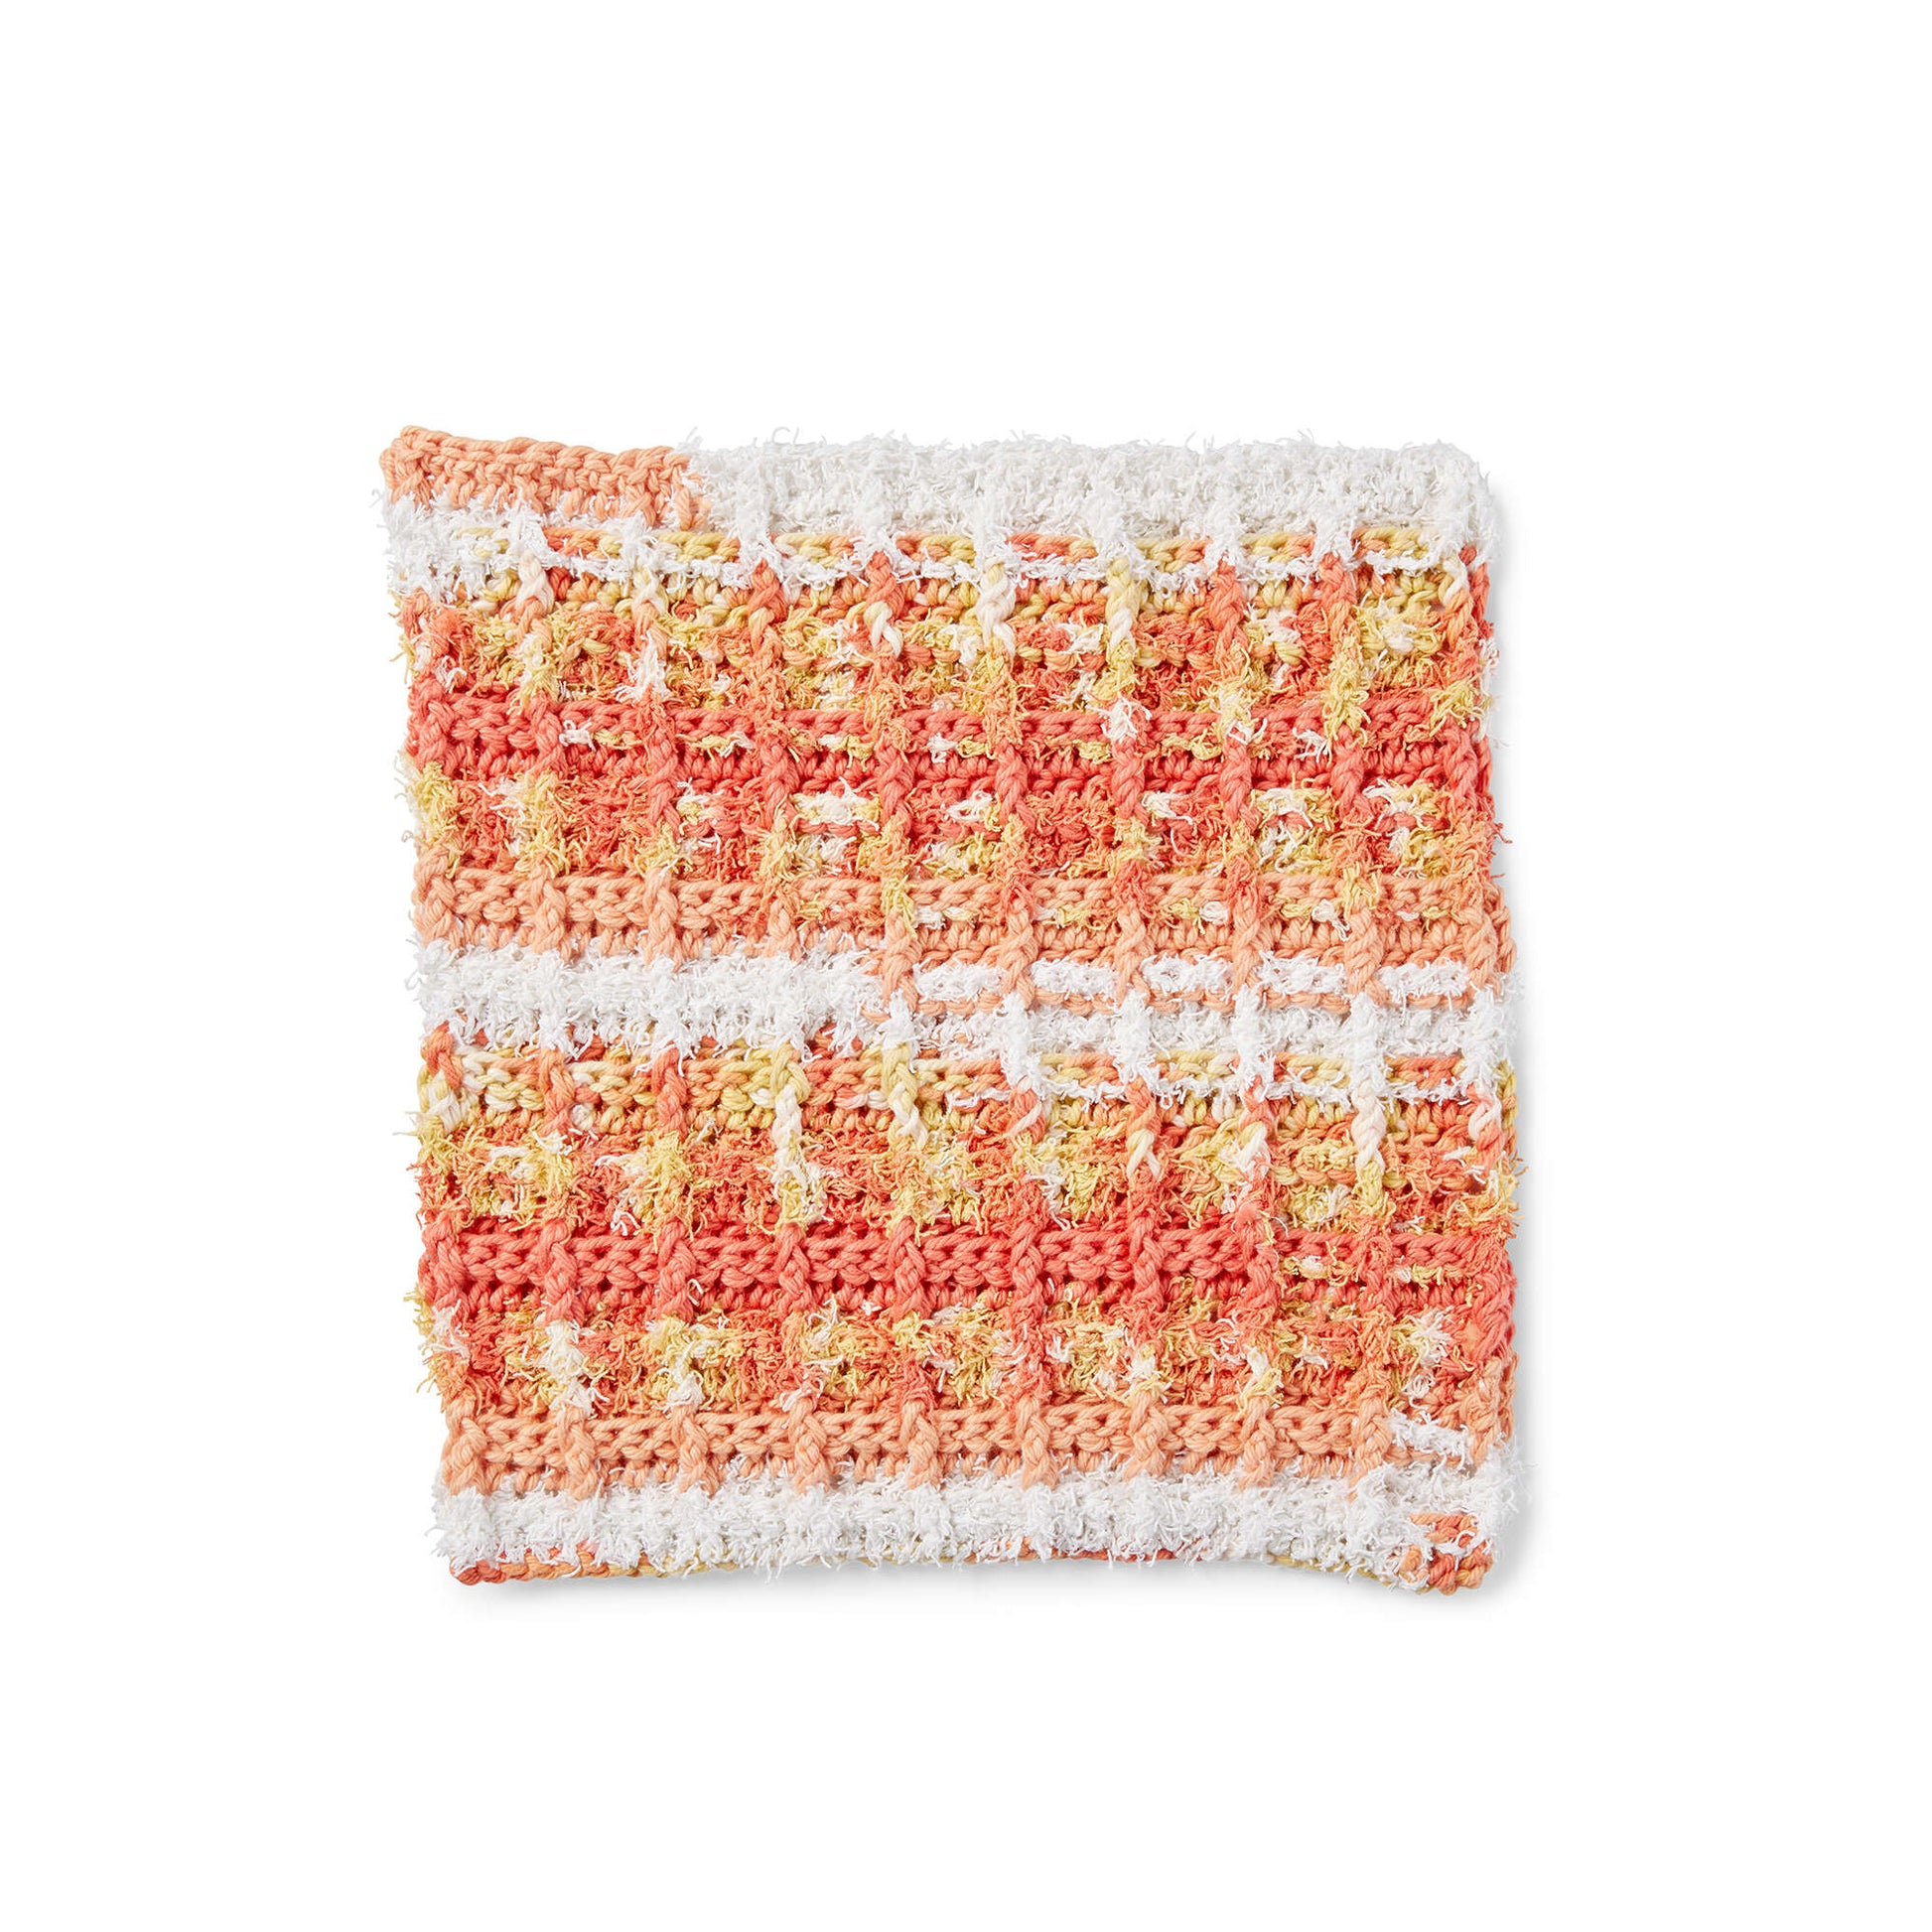 Free Lily Sugar'n Cream Scrubbing Waffle Crochet Dishcloth Pattern